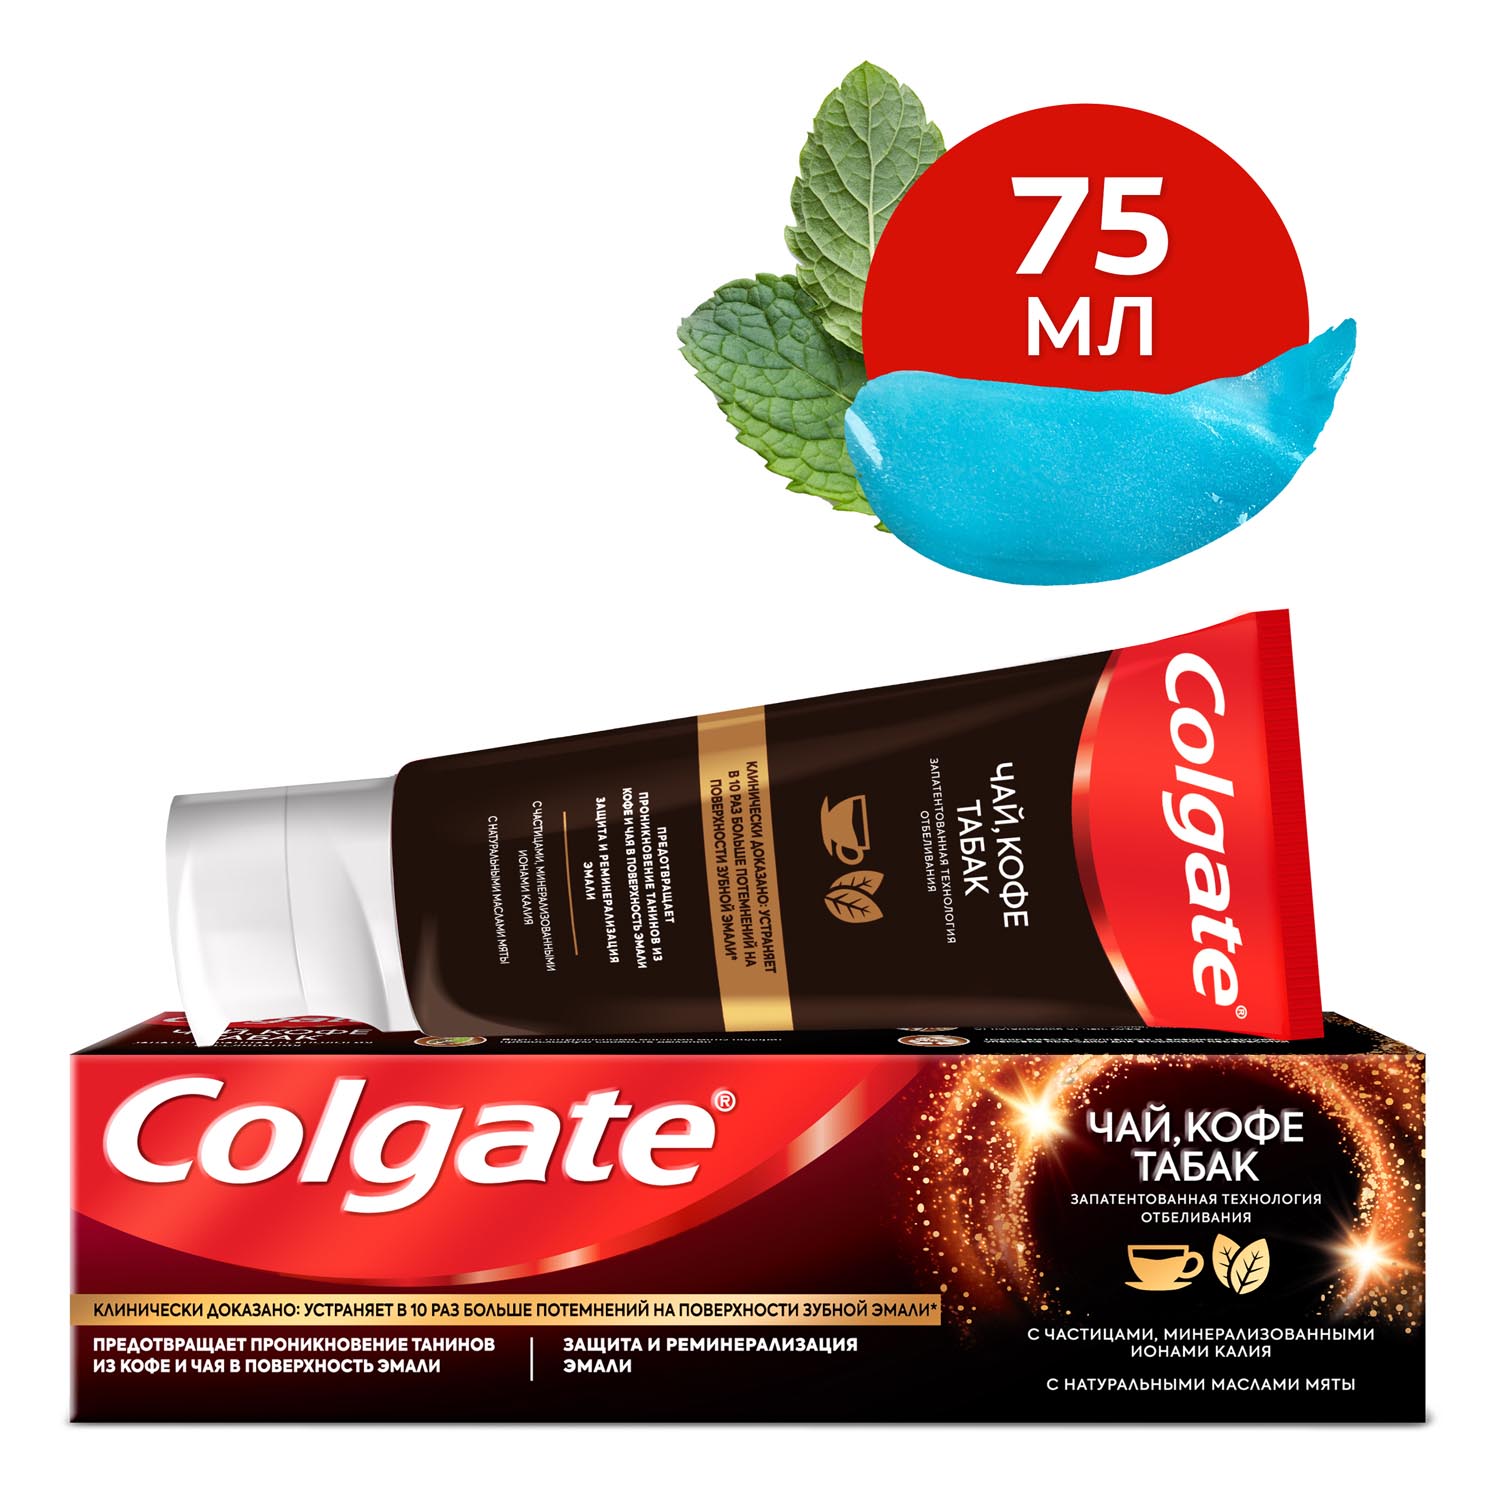 Зубная паста Colgate чай, кофе, табак отбеливающая с натуральными маслами мяты, 75 мл зубная паста colgate лечебные травы отбеливающая 100 мл